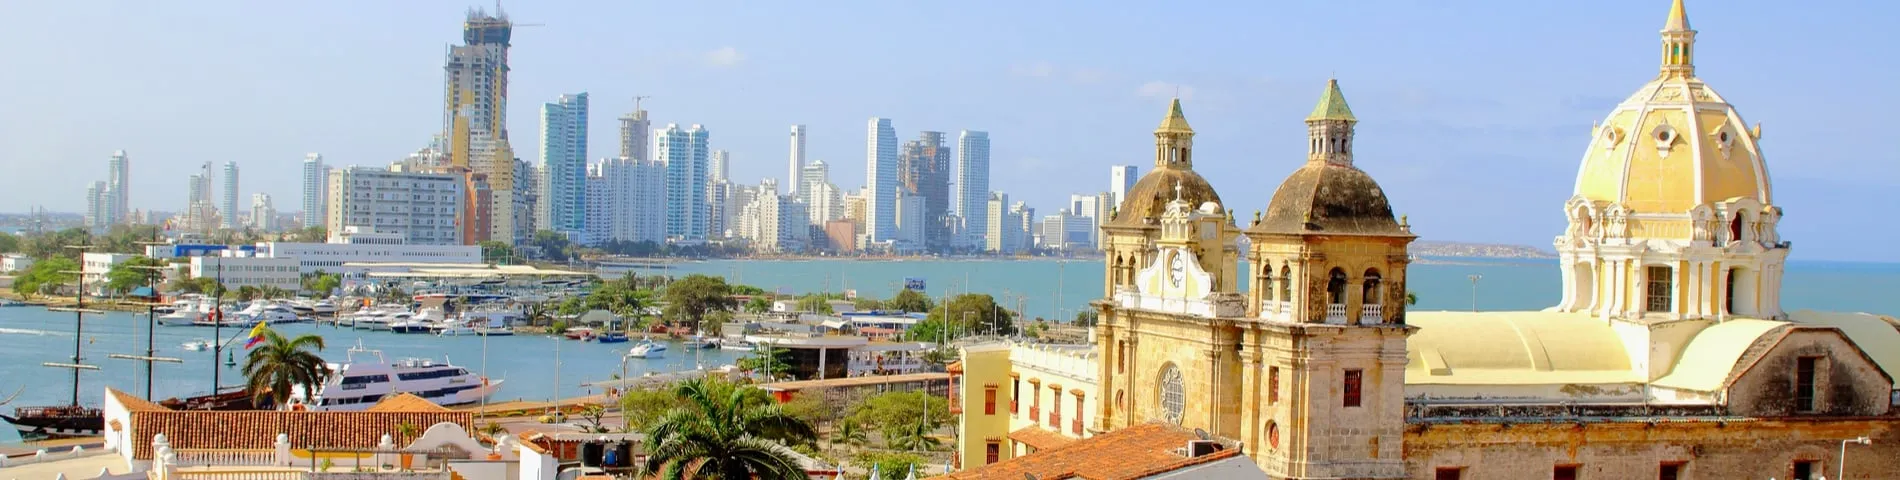 Cartagena - 